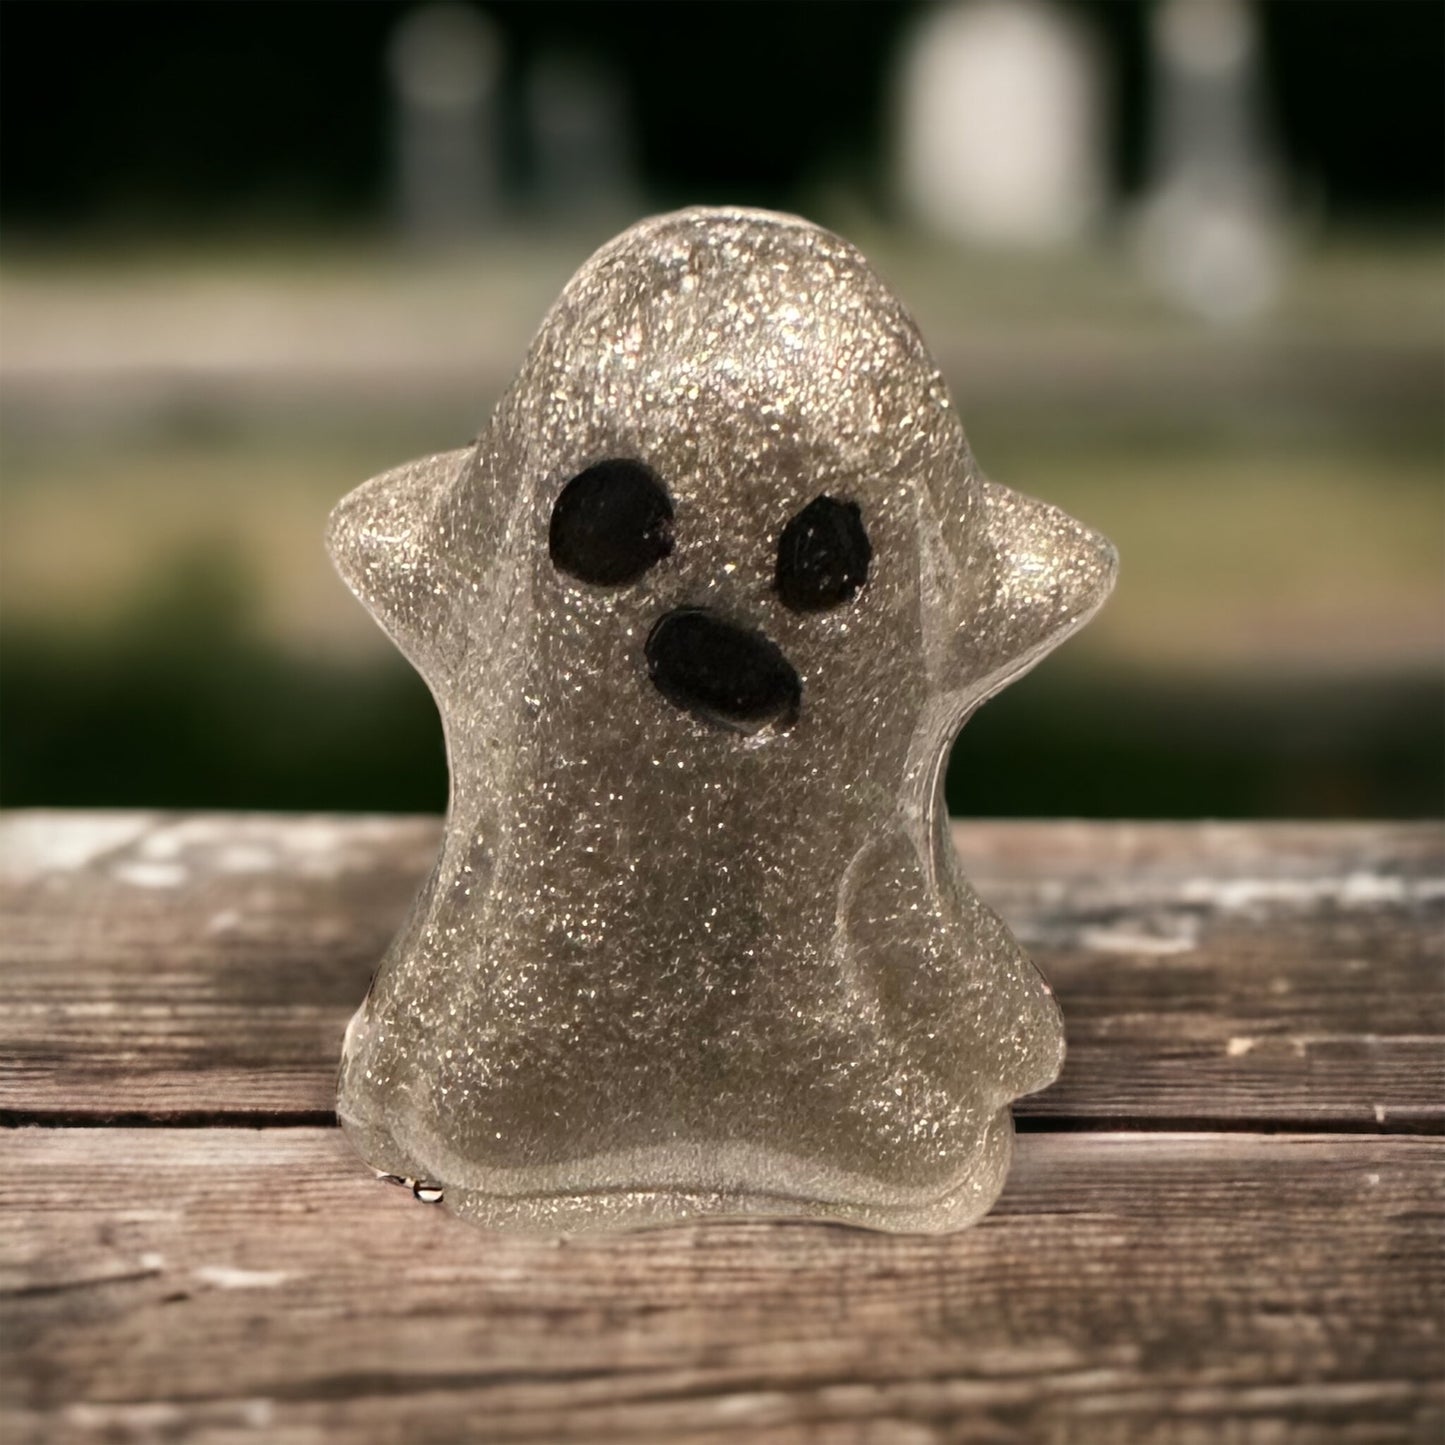 Mini Ghost Figurines